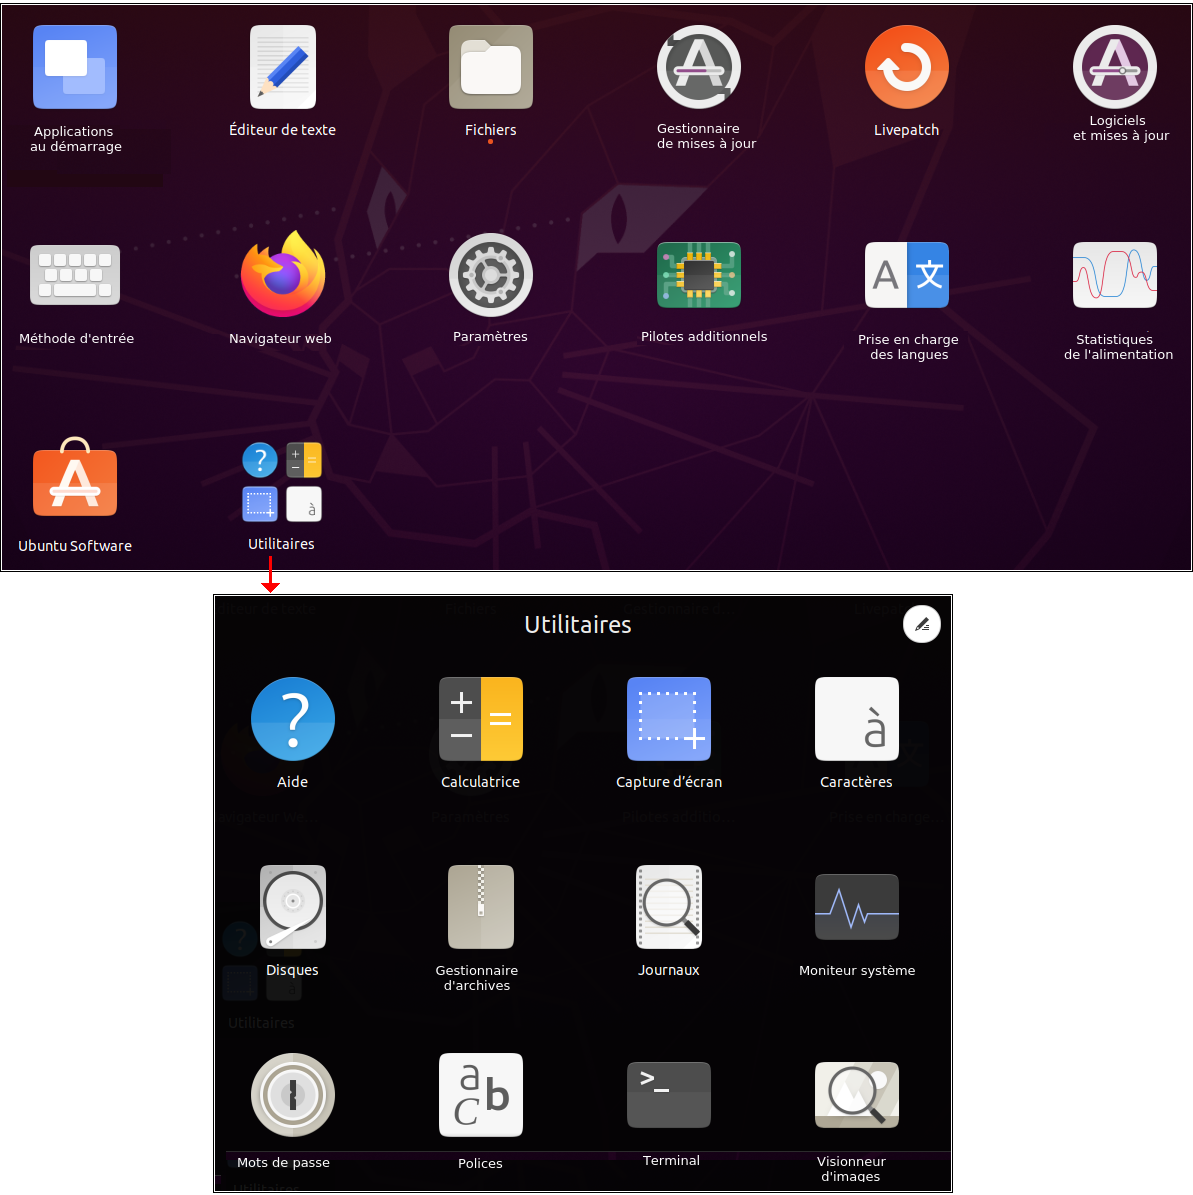 Outils de base installés avec la version minimale de Ubuntu 20.04 LTS